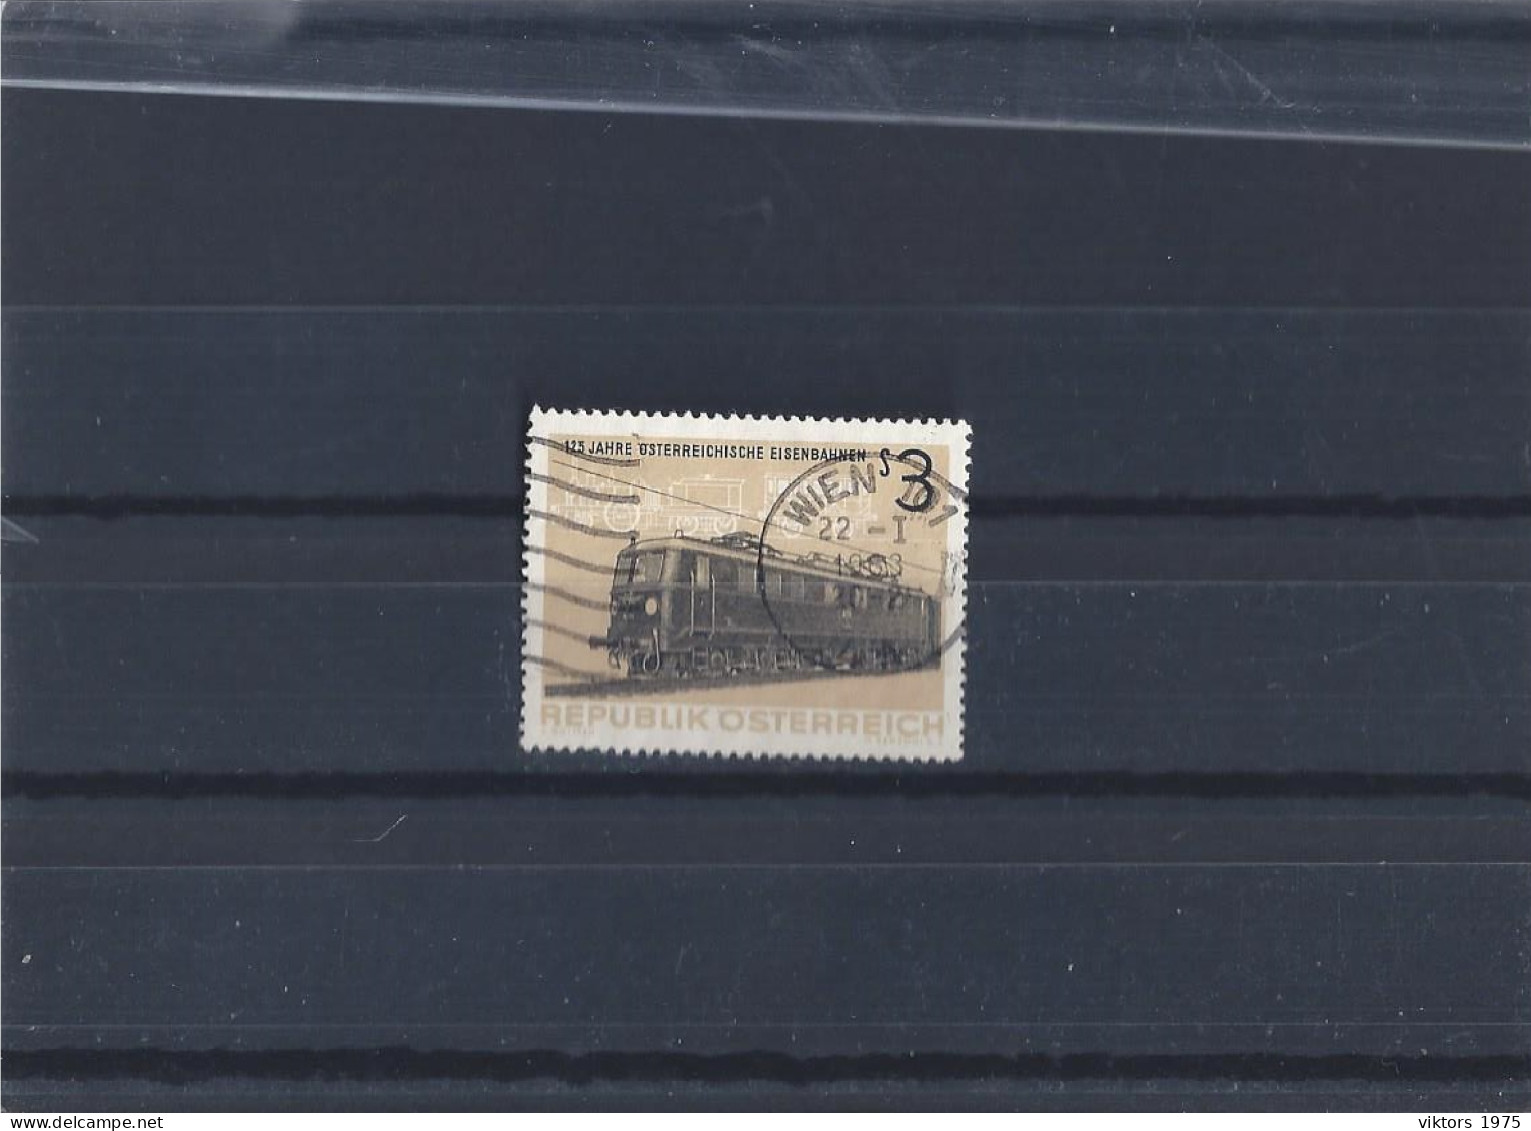 Used Stamp Nr.1126 In MICHEL Catalog - Usati